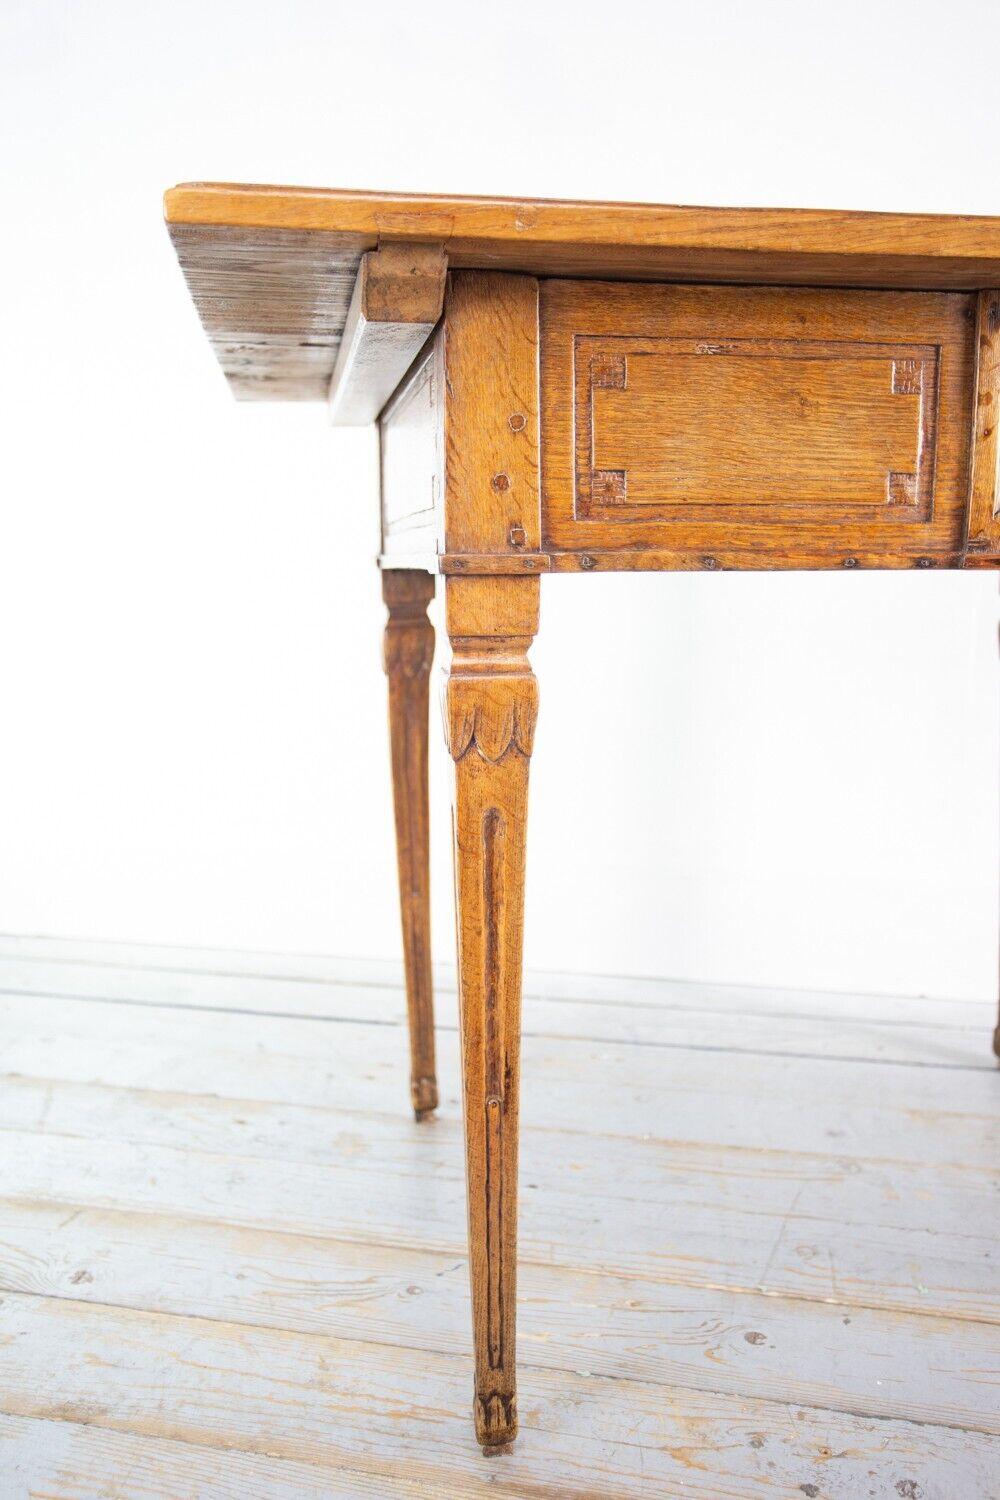 Antiker Rustikaler Tisch

Beistelltisch aus Eichenholz mit einer langen Schublade, teilweise mit Zapfen versehen, einer Platte aus zwei Brettern und detaillierten Schnitzereien an den Beinen. Er eignet sich gut als Basteltisch oder zum Ausstellen